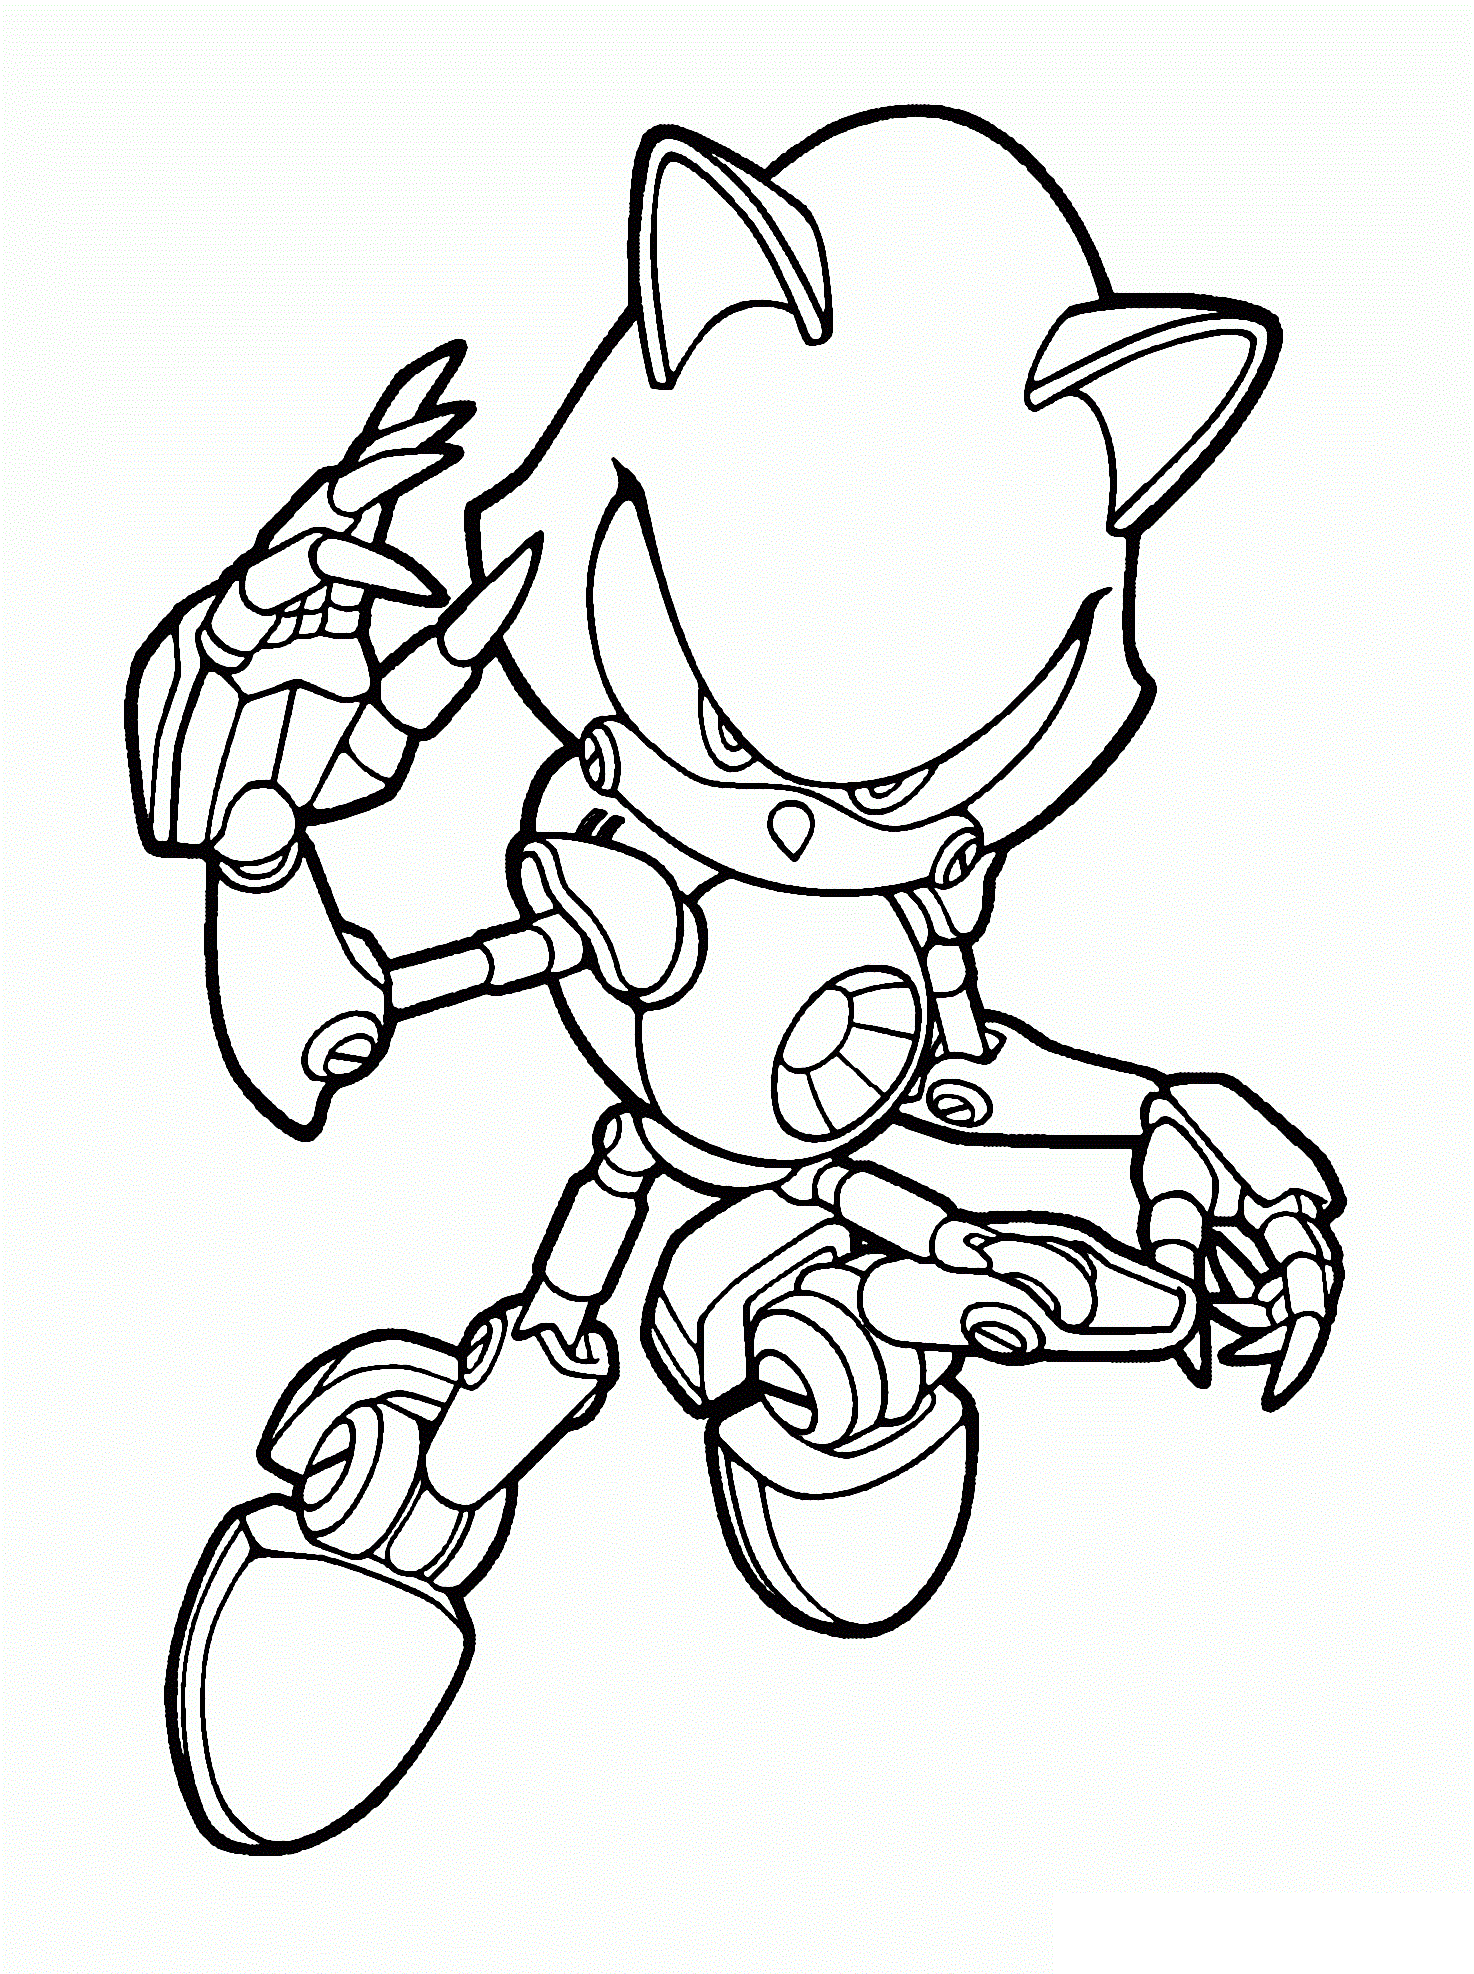 Tranh tô màu người máy Sonic